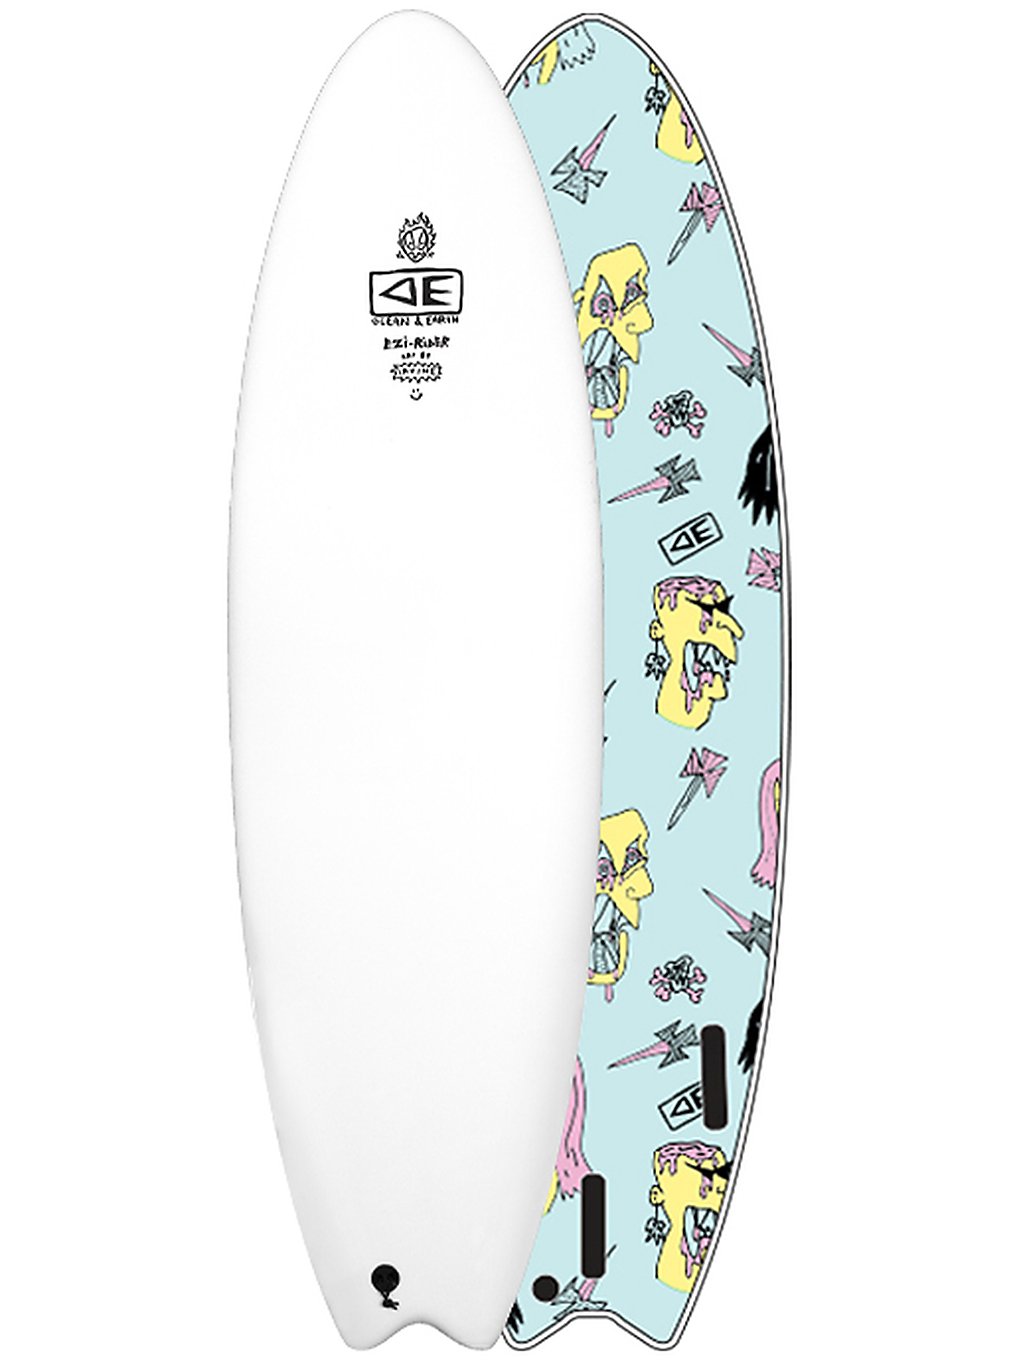 Ocean & Earth Brains Ezi Rider Soft 6'0 Surfboard white